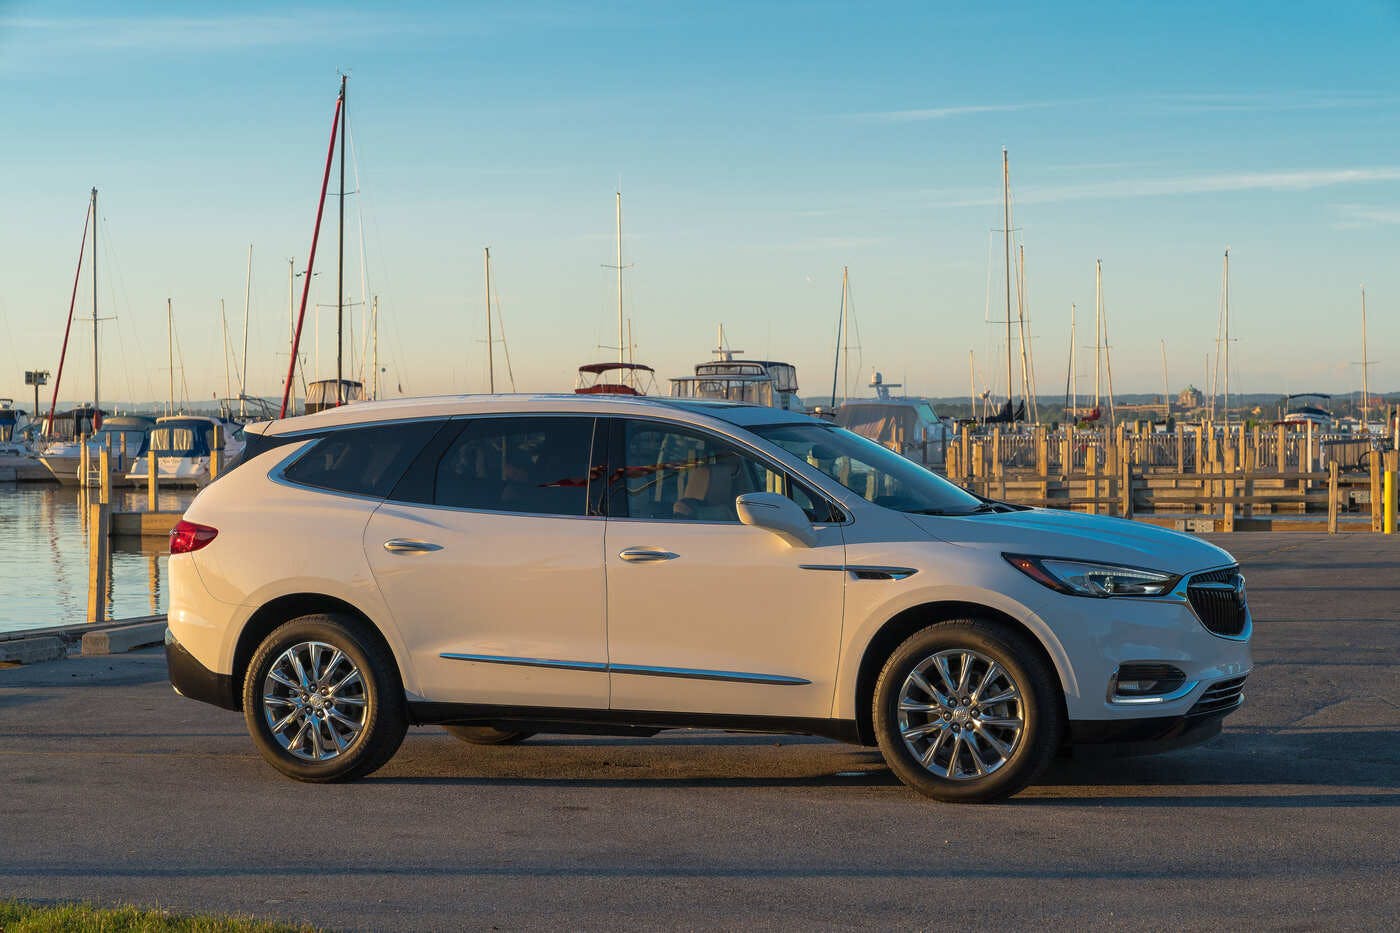 2019 Buick Enclave Comparisons Reviews Pictures Truecar